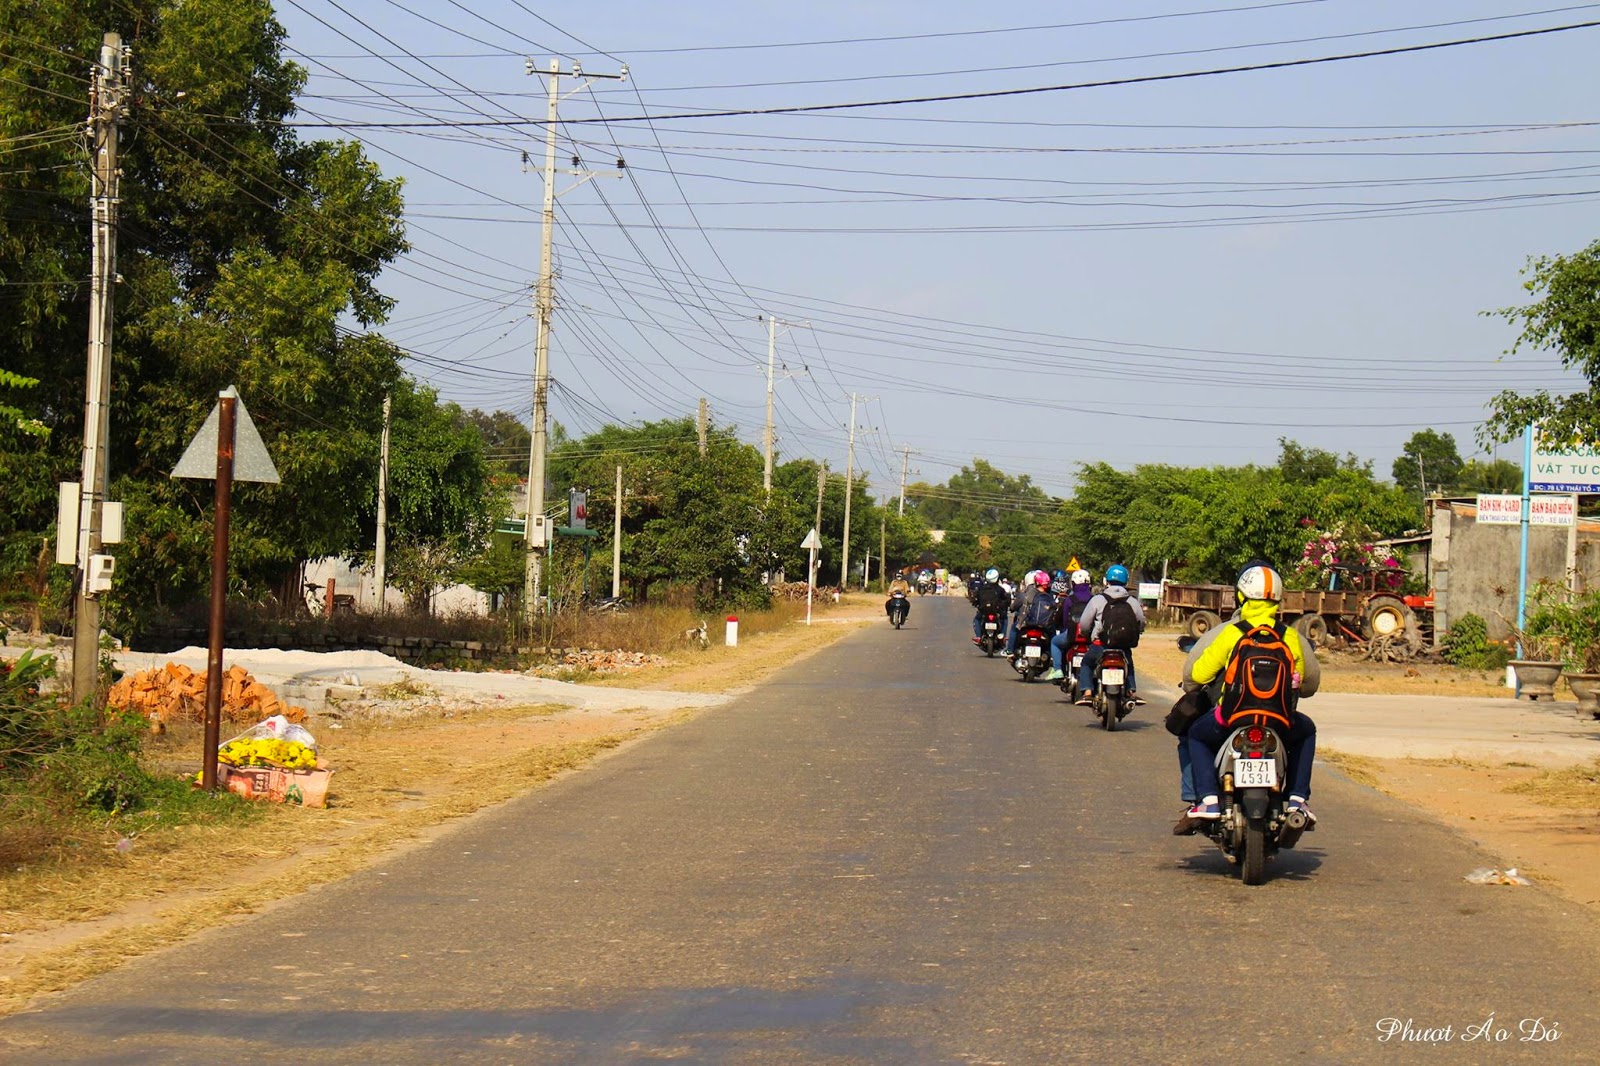 Review chuyến phượt Phan Thiết - Phan Rang - Đà Lạt xuất phát từ Sài Gòn: Phần 1 Con đường đầy nắng